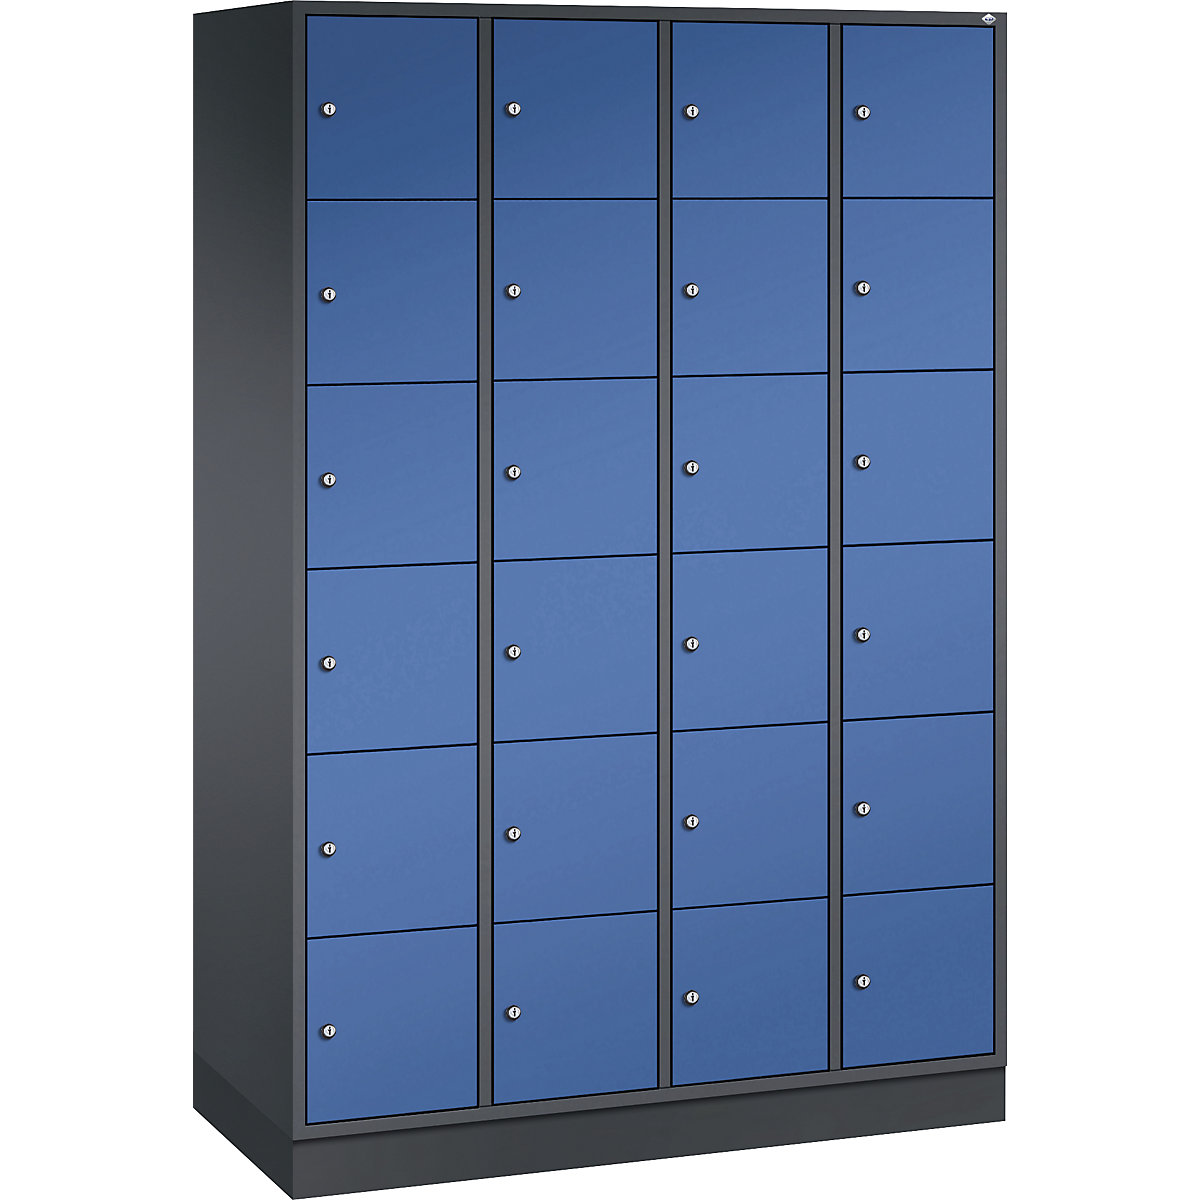 Vestiaire multicases en acier INTRO, casiers hauteur 285 mm – C+P, l x p 1220 x 500 mm, 24 casiers, corps gris noir, portes bleu gentiane-10